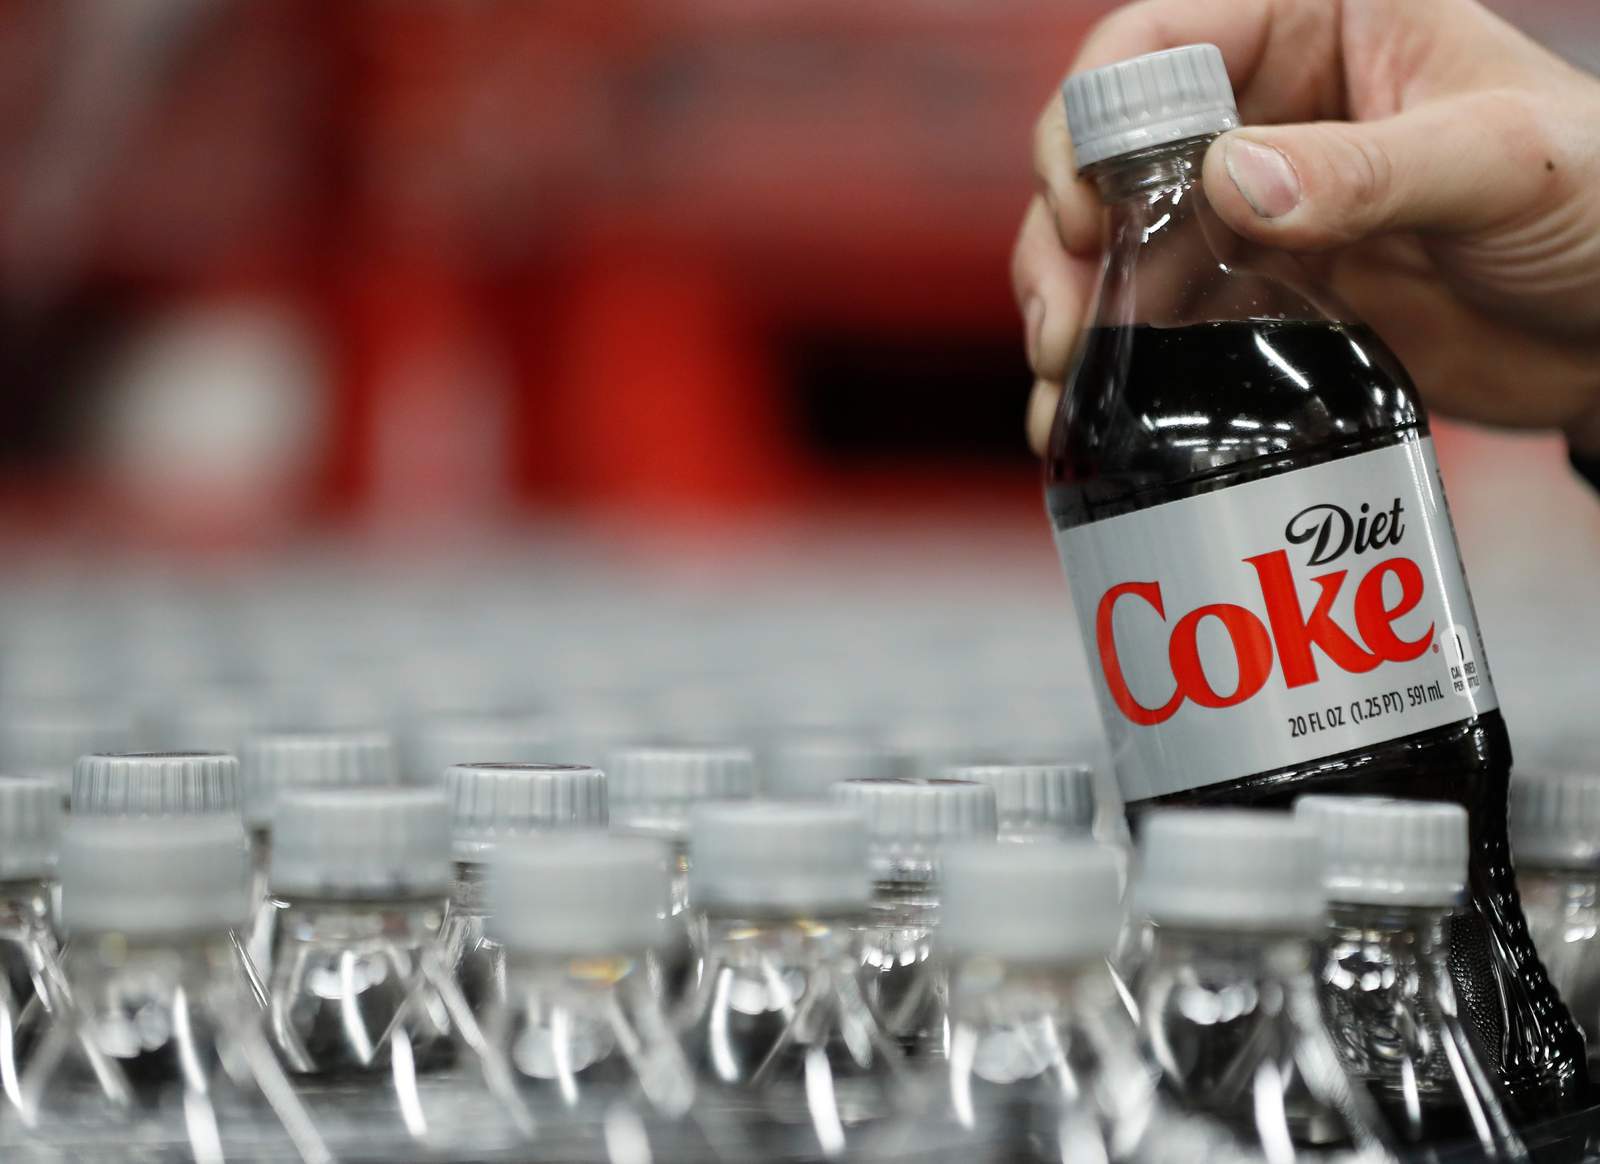 Coca-Cola wants to reward “a true boss”